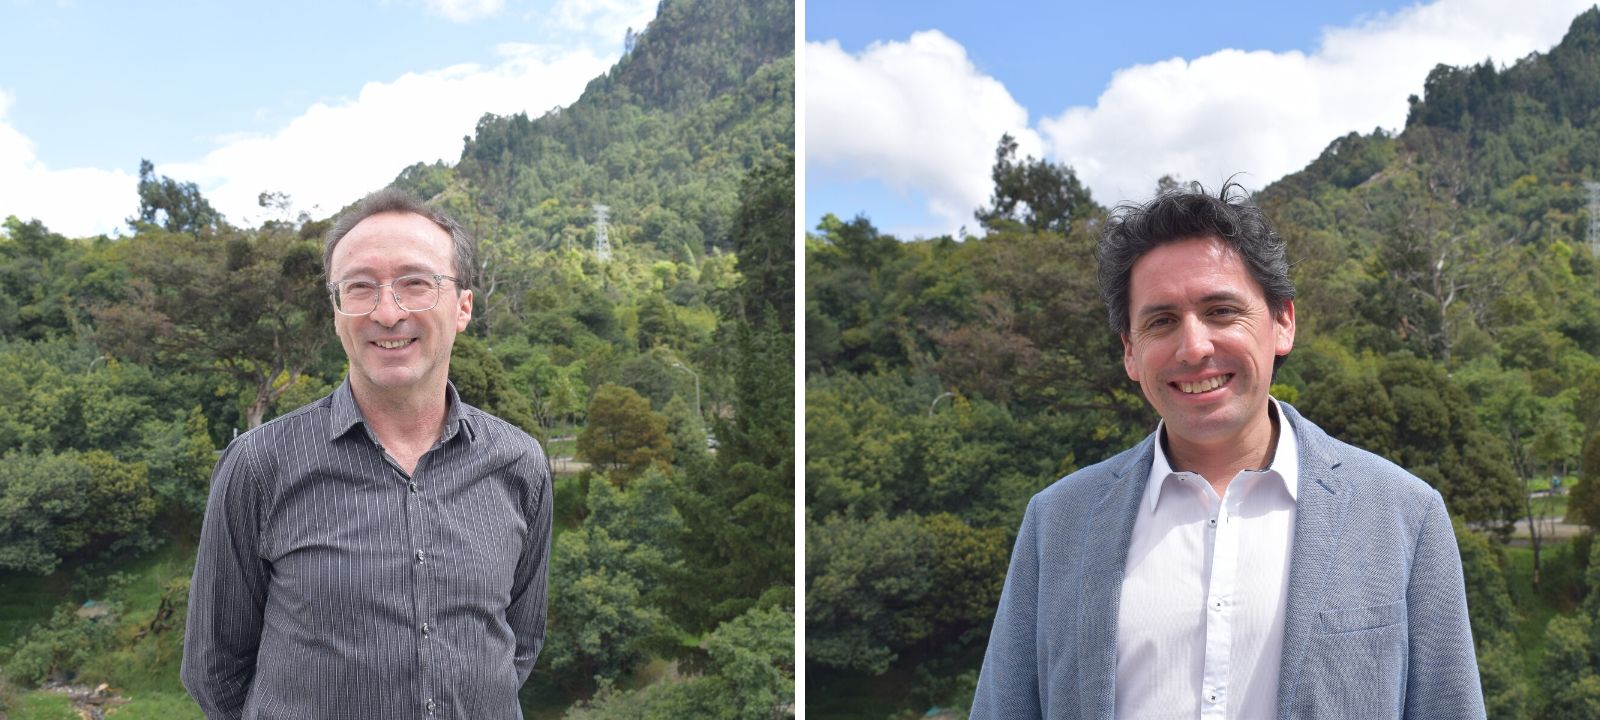 Jorge Medina y Jairo Escobar, profesores de Ingeniería Mecánica de Uniandes